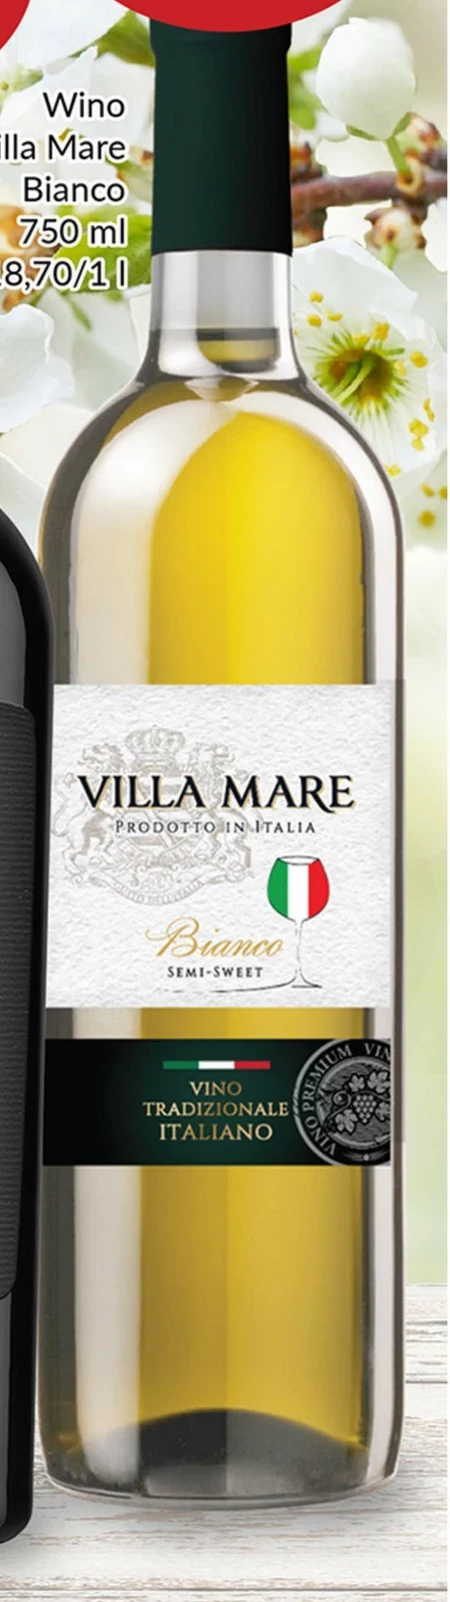 Wino Villa Mare